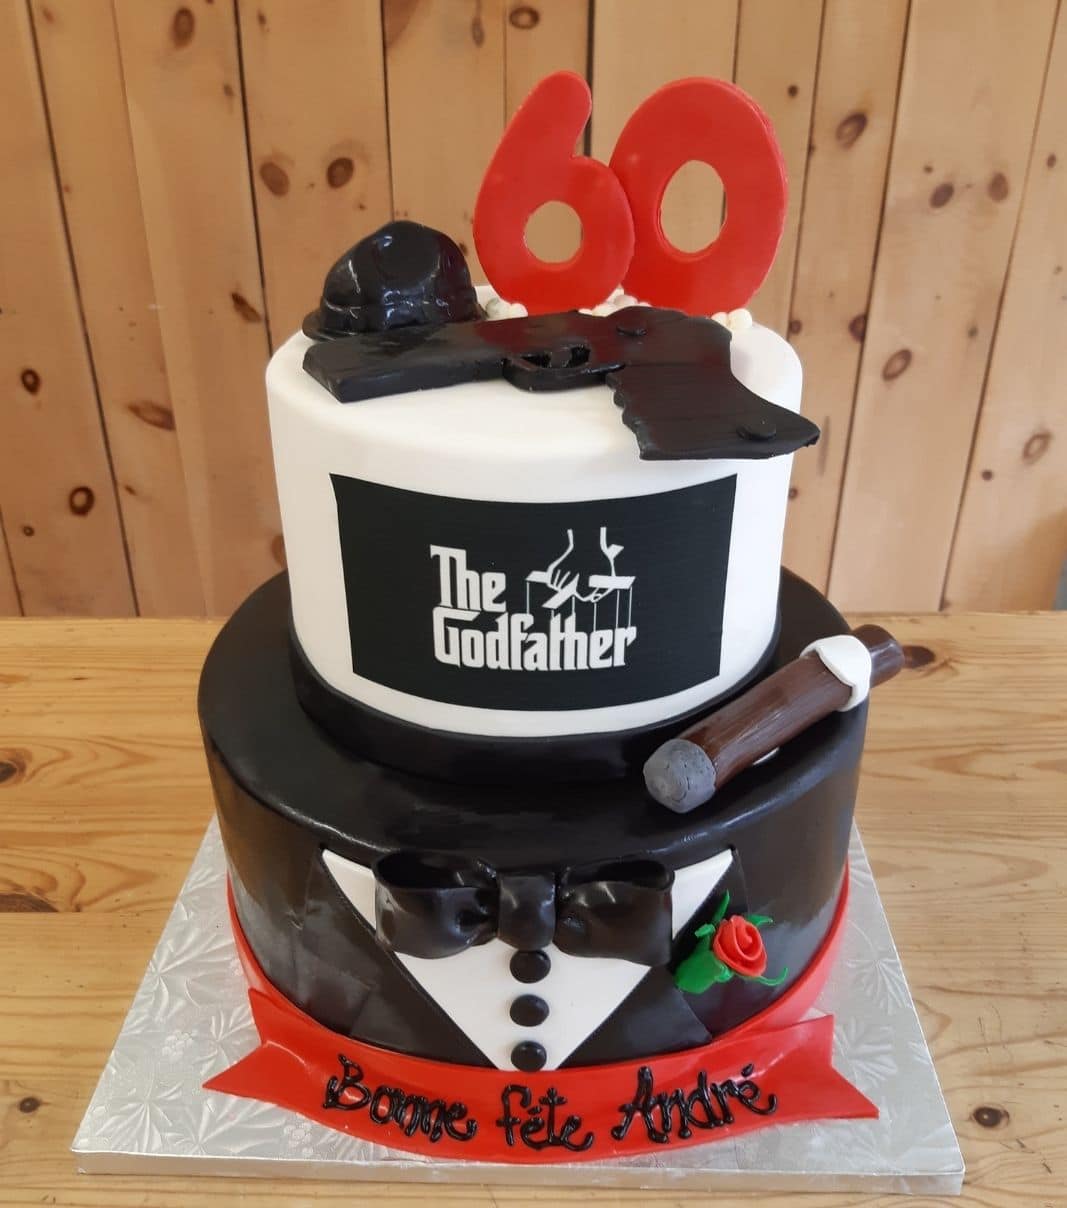 Gâteau d'anniversaire sur mesure de 60 ans d'André: gâteau de 2 étages à thématique Le Parrain avec une couverture en fondant en tuxedo et décoré d'un fusil, d'un cigare et d'un chapeau en fondant.